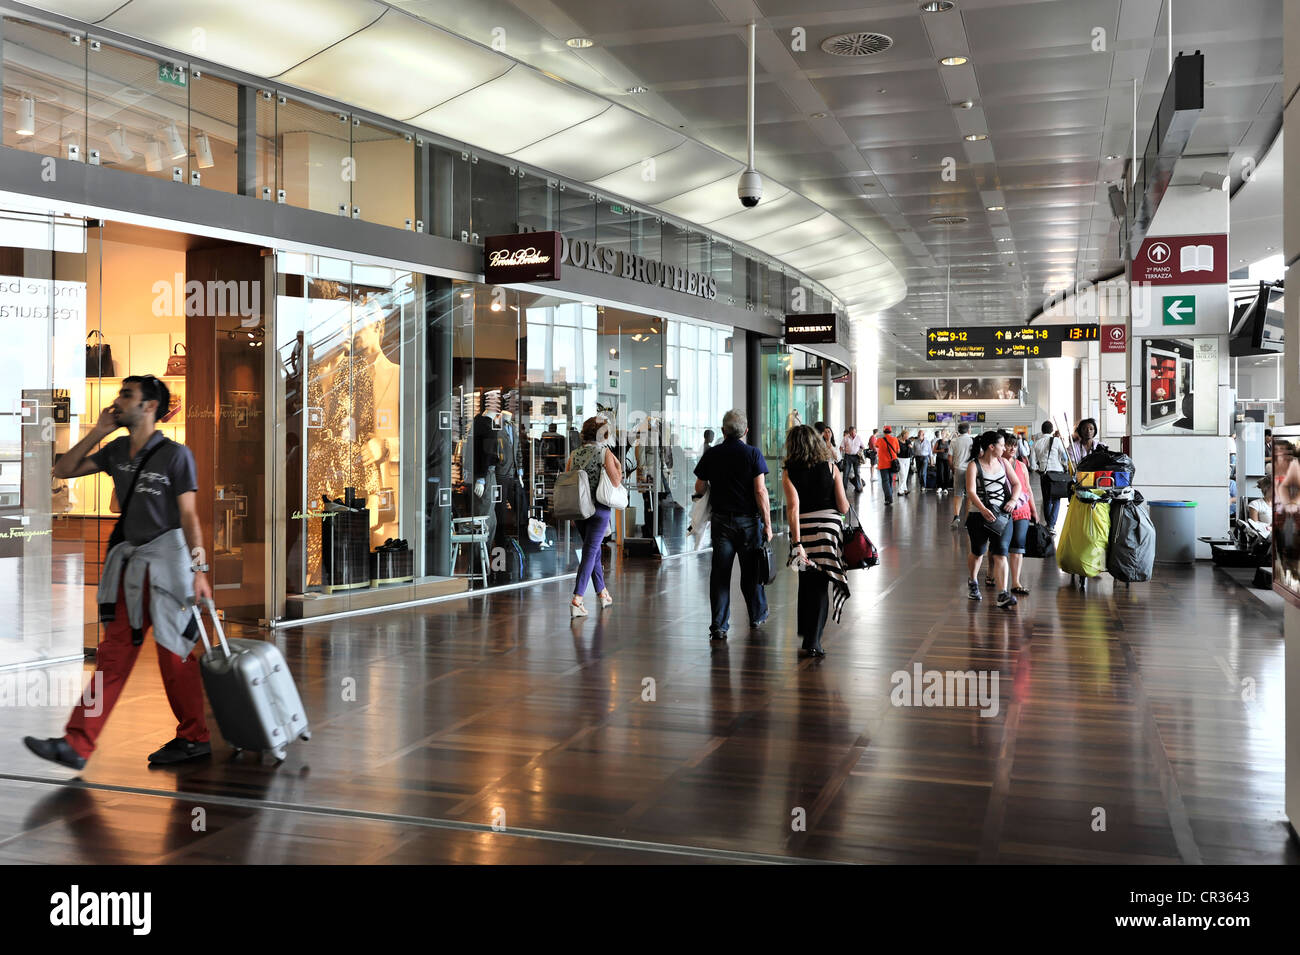 Aeroporto di venezia marco polo immagini e fotografie stock ad alta  risoluzione - Alamy